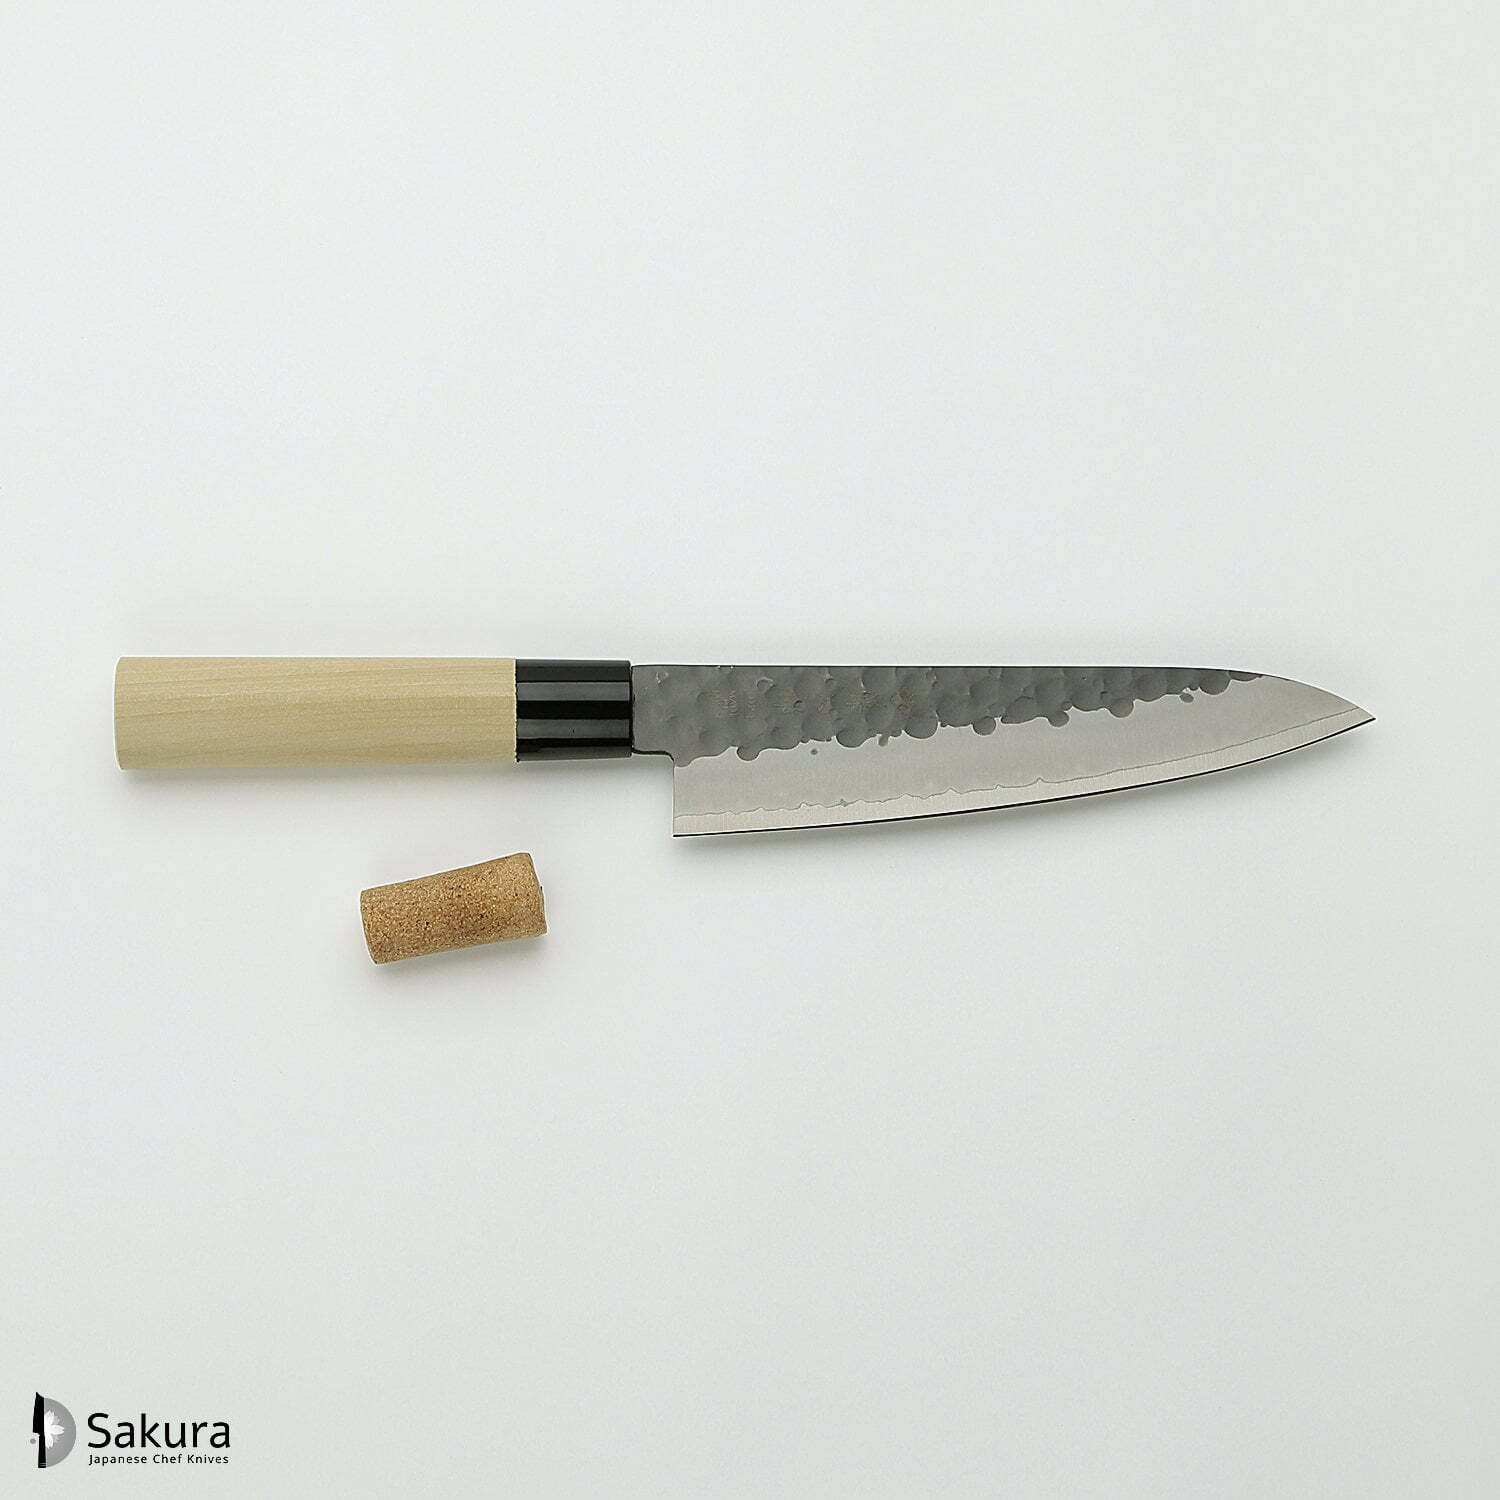 סכין שף רב-תכליתית גִּיוּטוֹ 180מ״מ מחוזקת 3 שכבות: פלדת פחמן יפנית VG-10 עטופה פלדת אל-חלד גימור קורואיצ׳י שחור עם ריקוע פטיש טוג׳ירו יפן